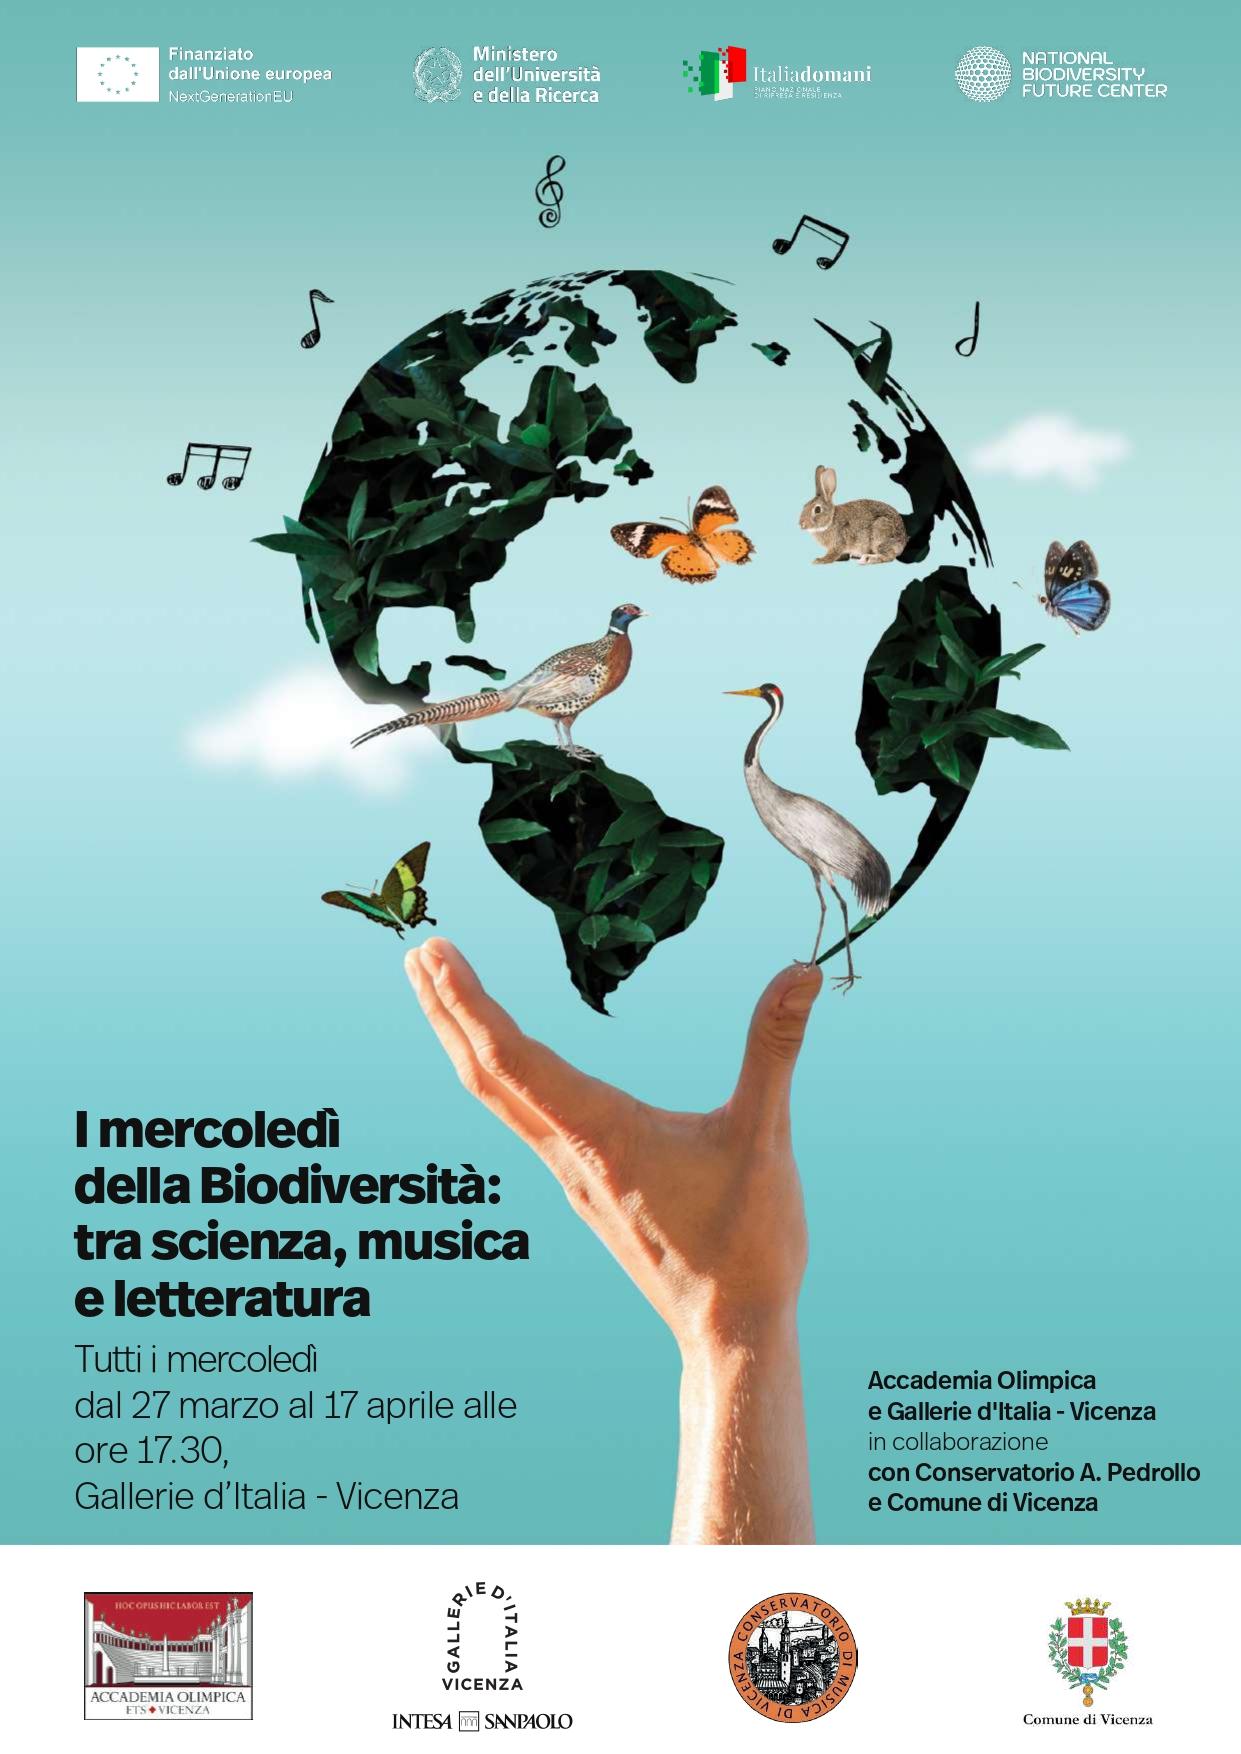 I mercoledì della Biodiversità: tra musica, scienza e letteratura 